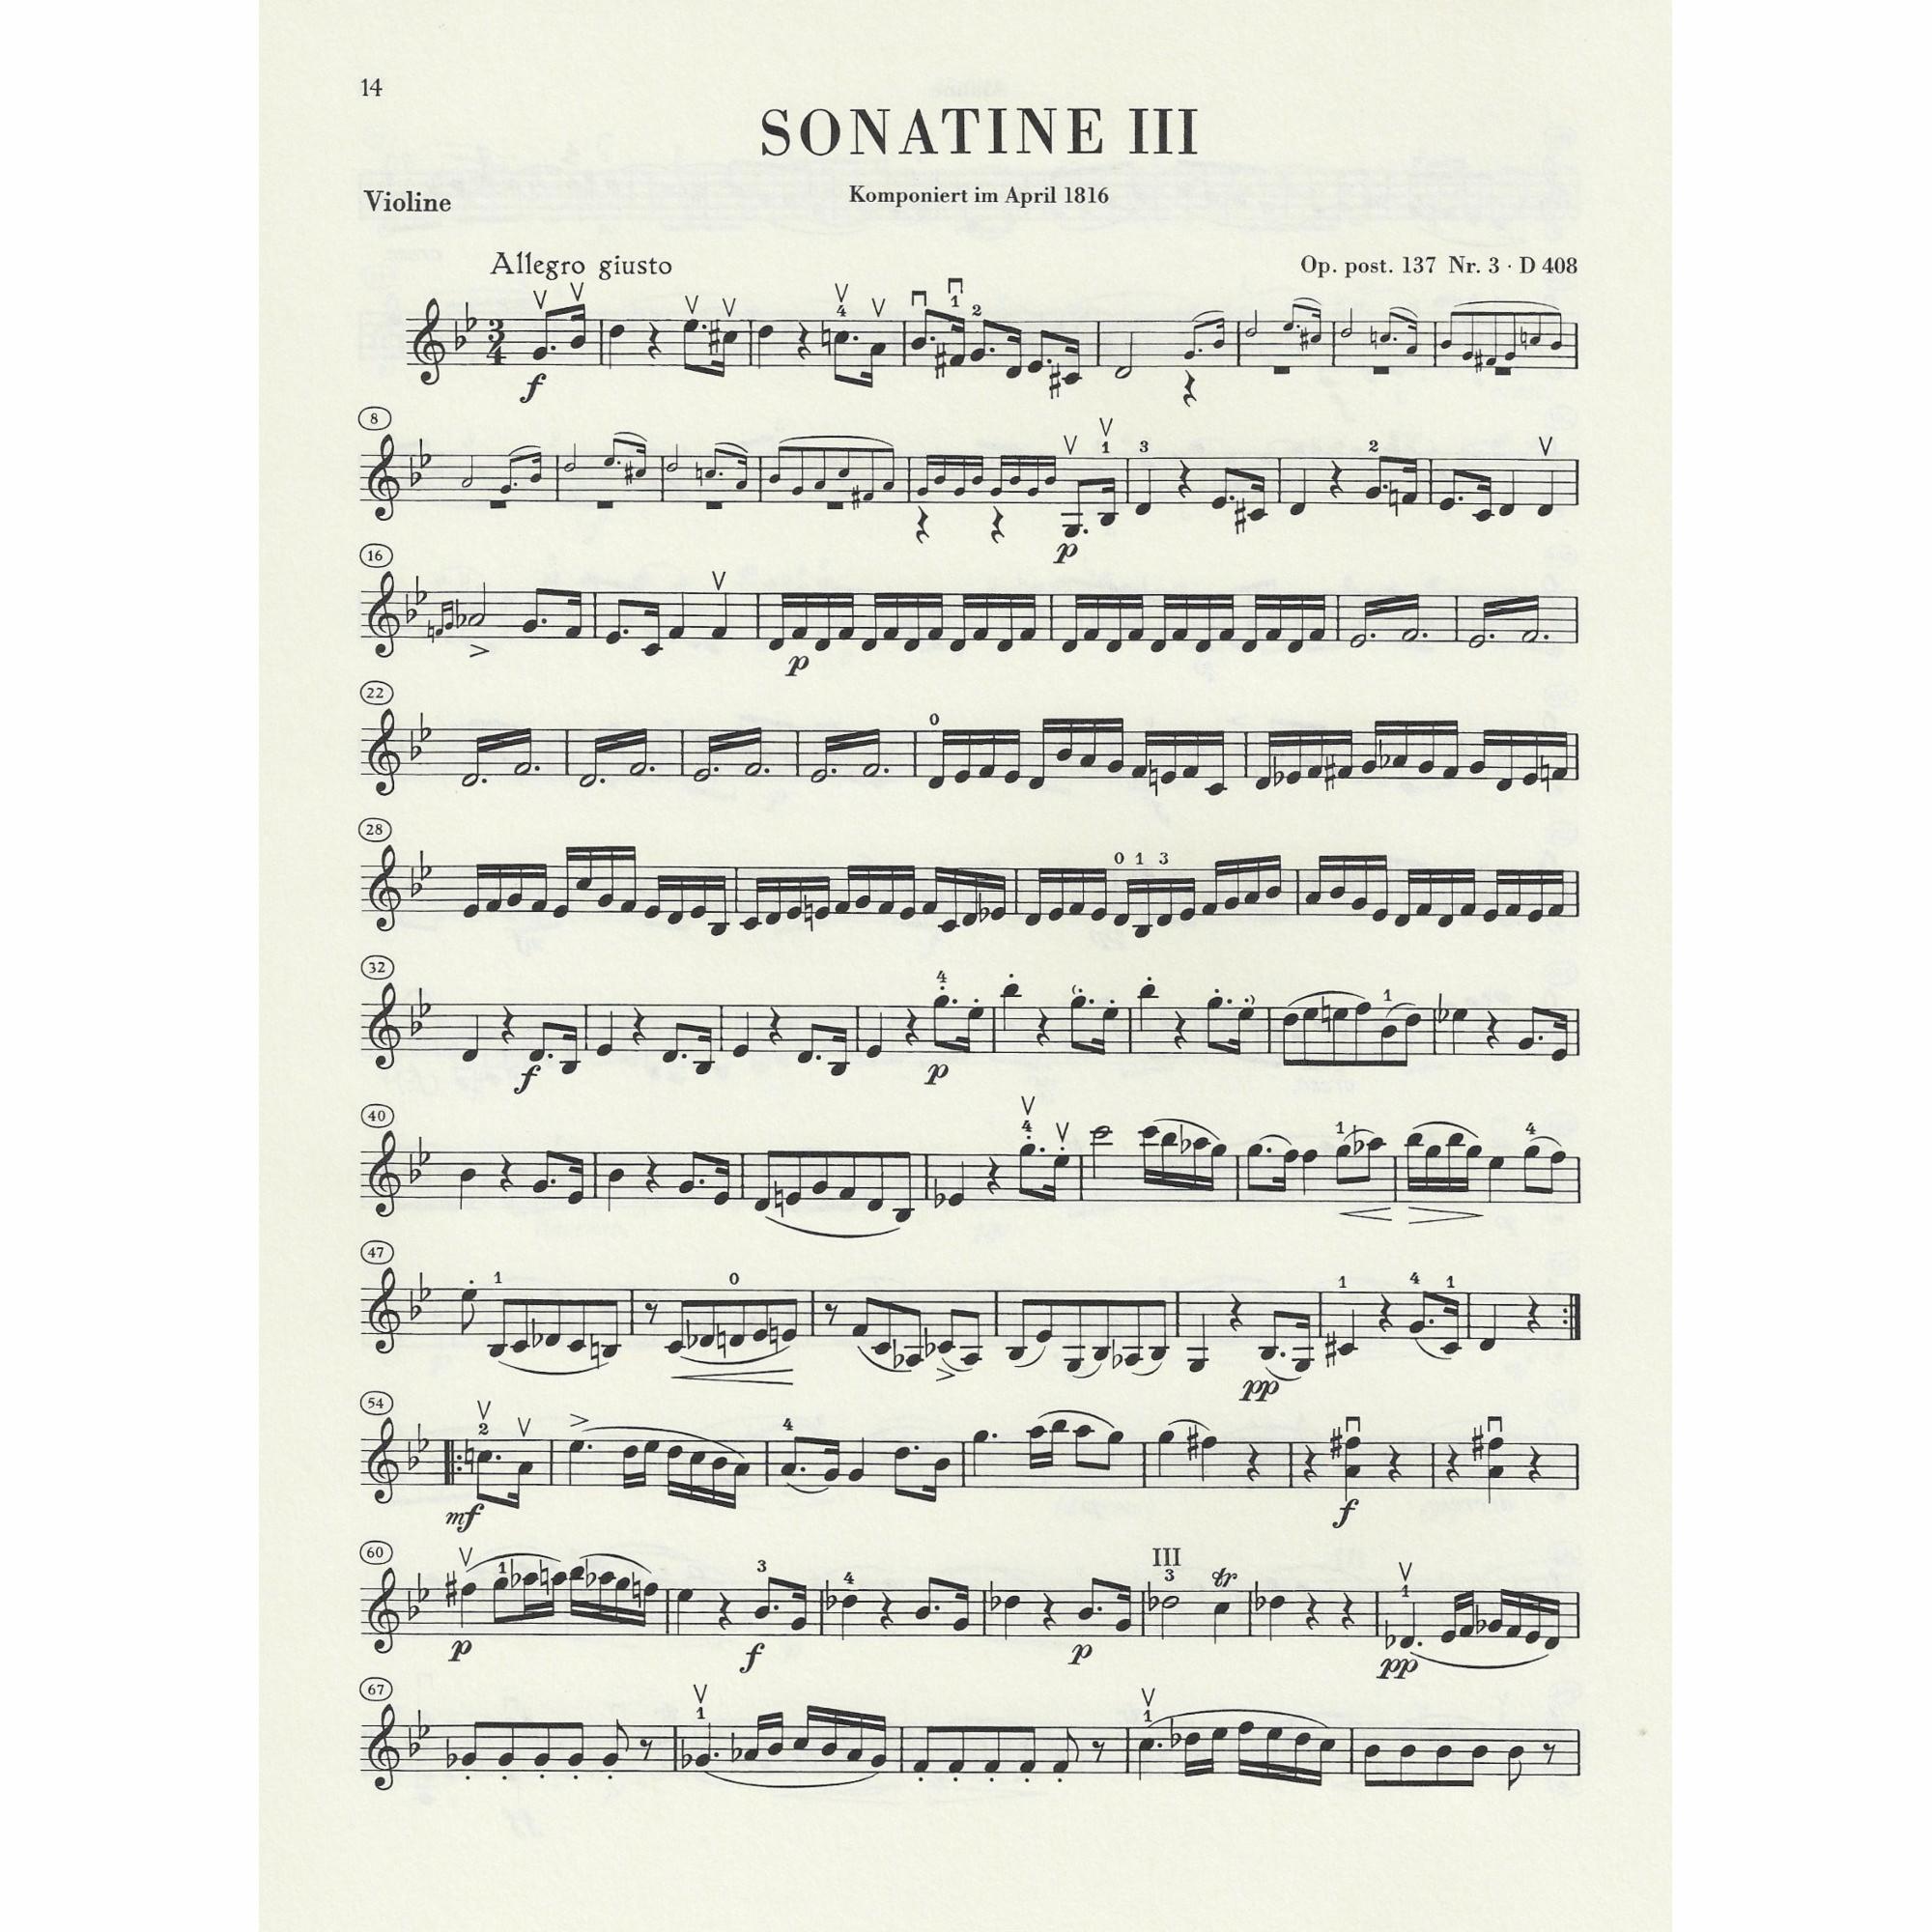 Sample: Marked Violin Part (No. 3)